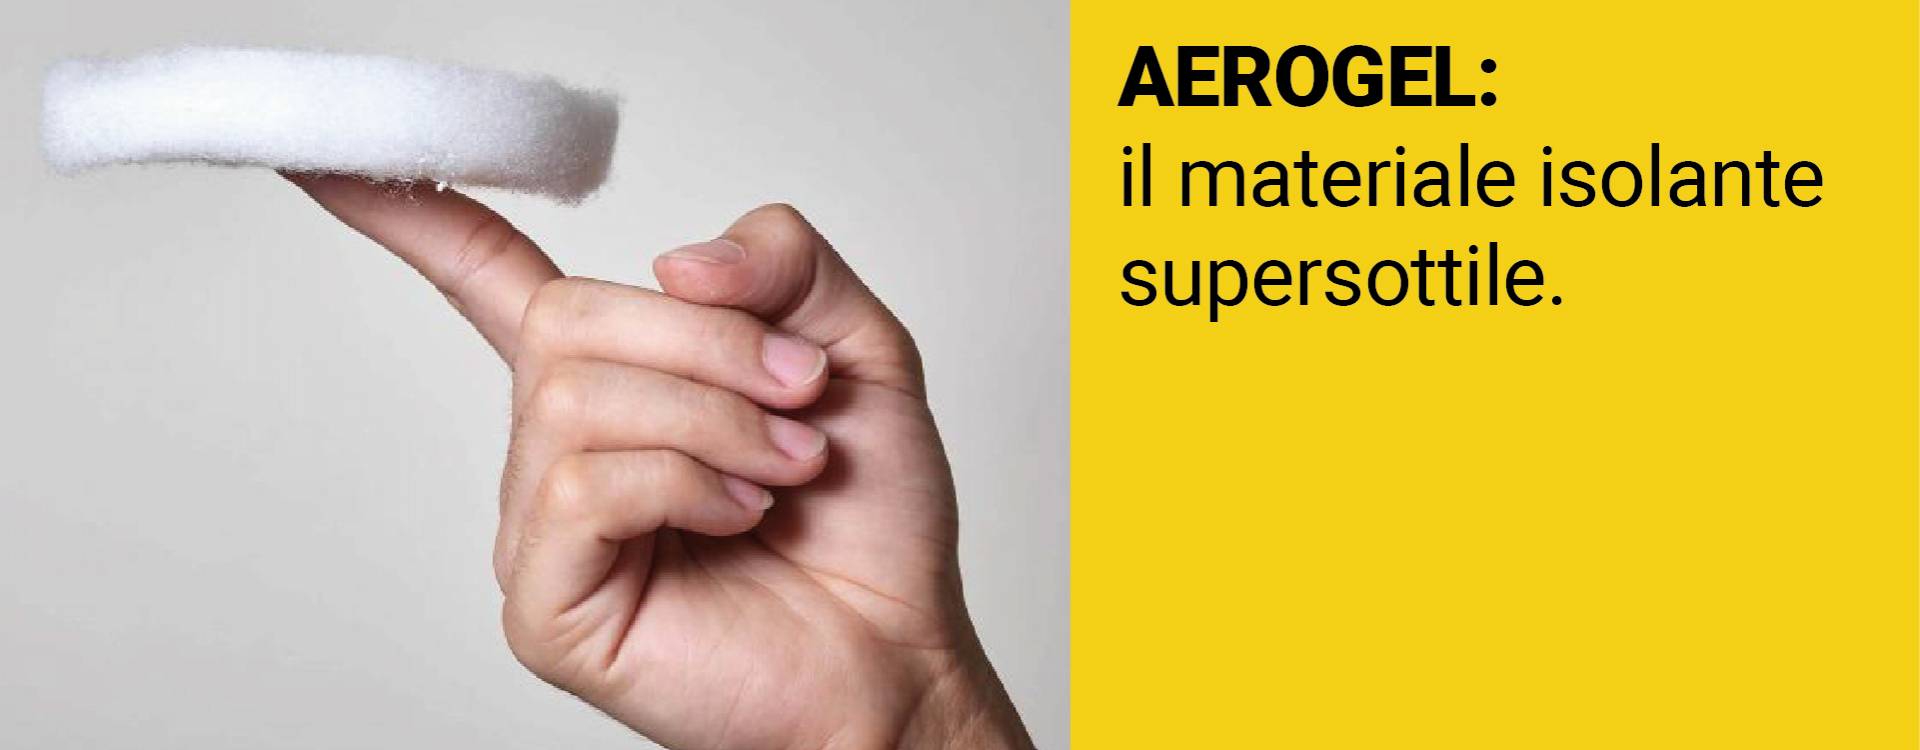 AEROGEL: Il materiale isolante supersottile.